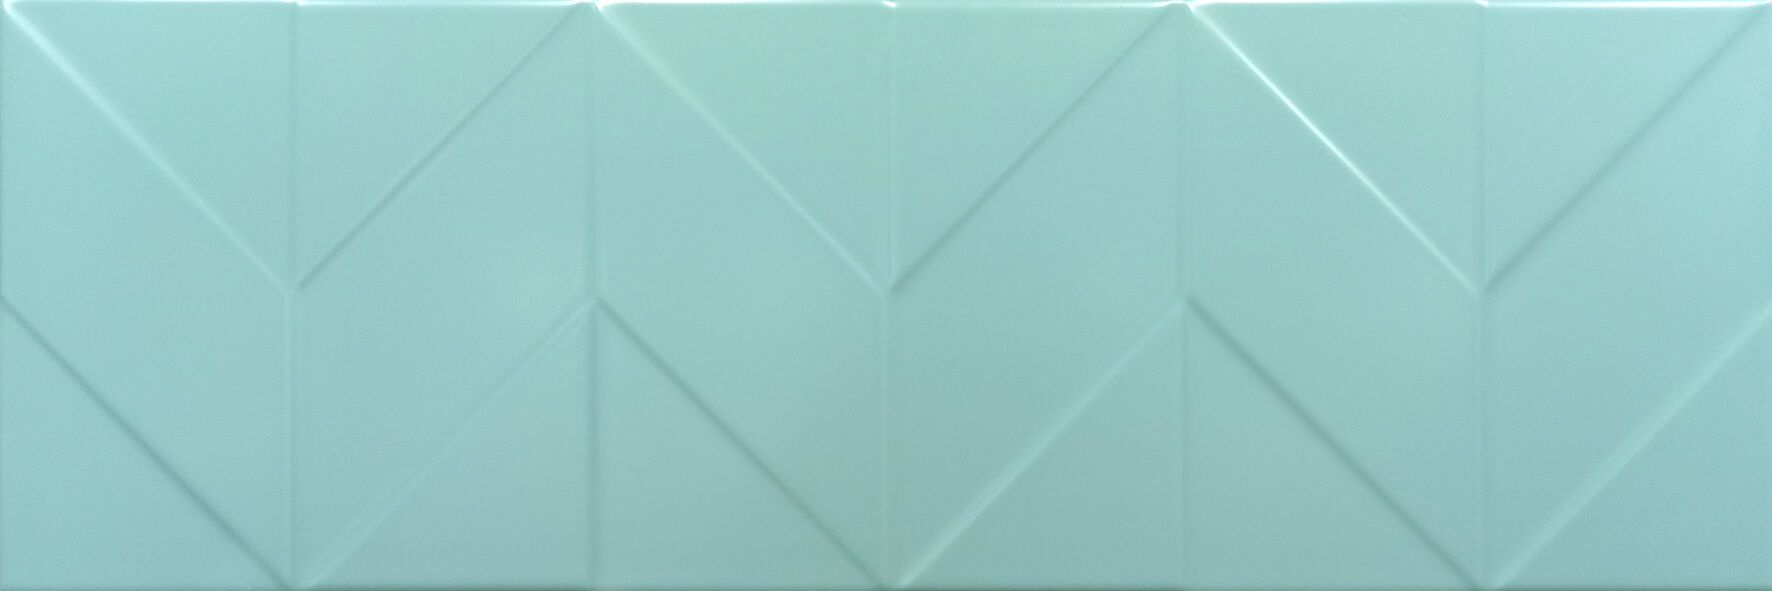 Керамическая плитка Керамин Керамин Танага 4Д Настенная плитка 75х25